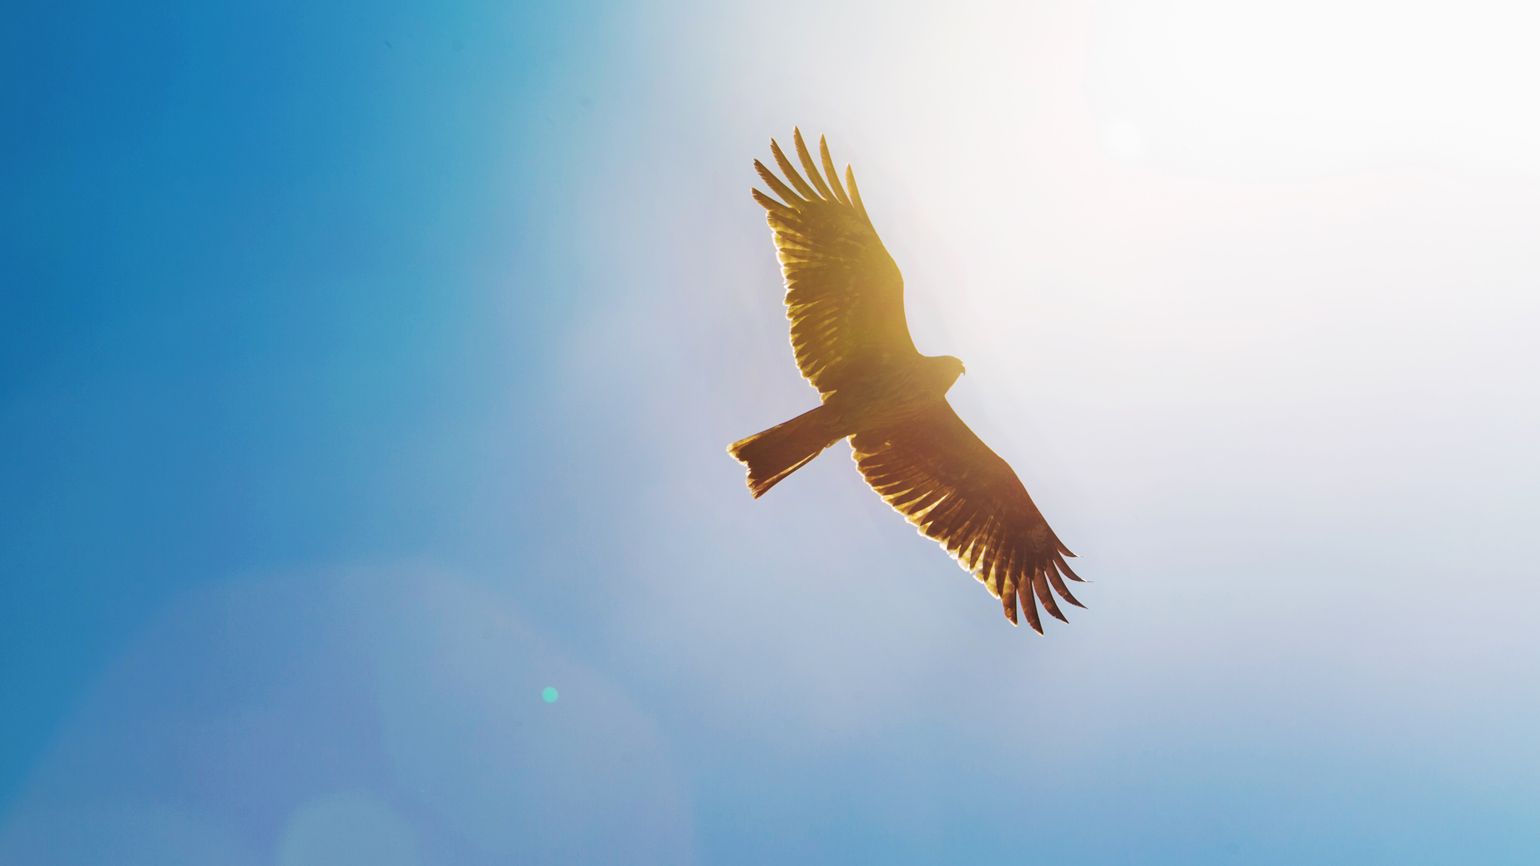 An eagle flying through a blue sky.